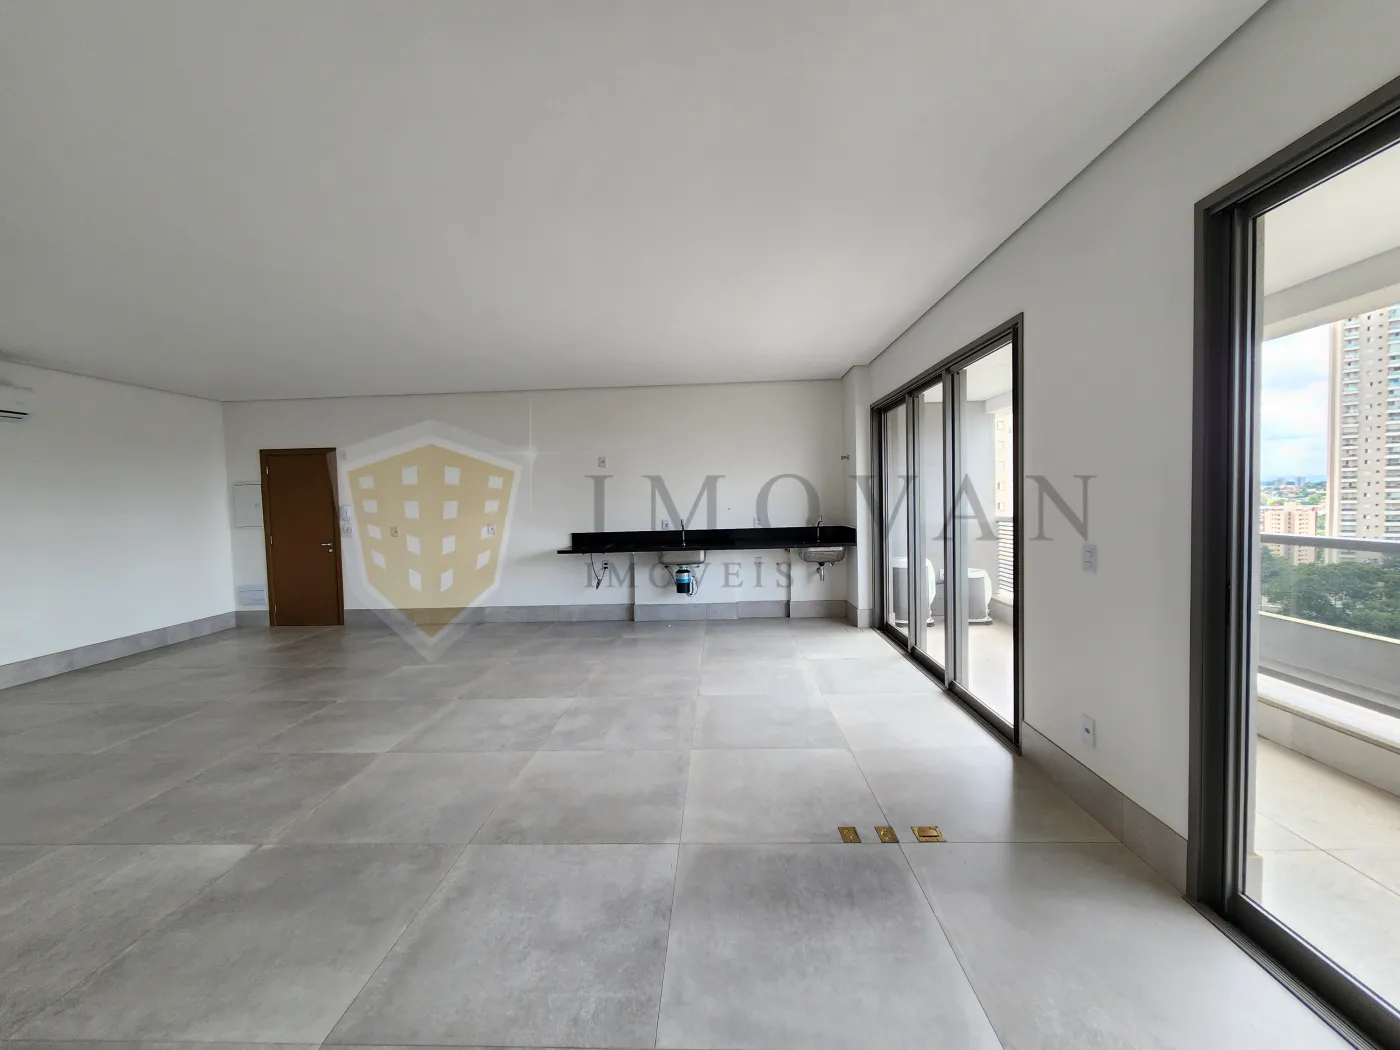 Comprar Apartamento / Flat em Ribeirão Preto R$ 775.000,00 - Foto 4